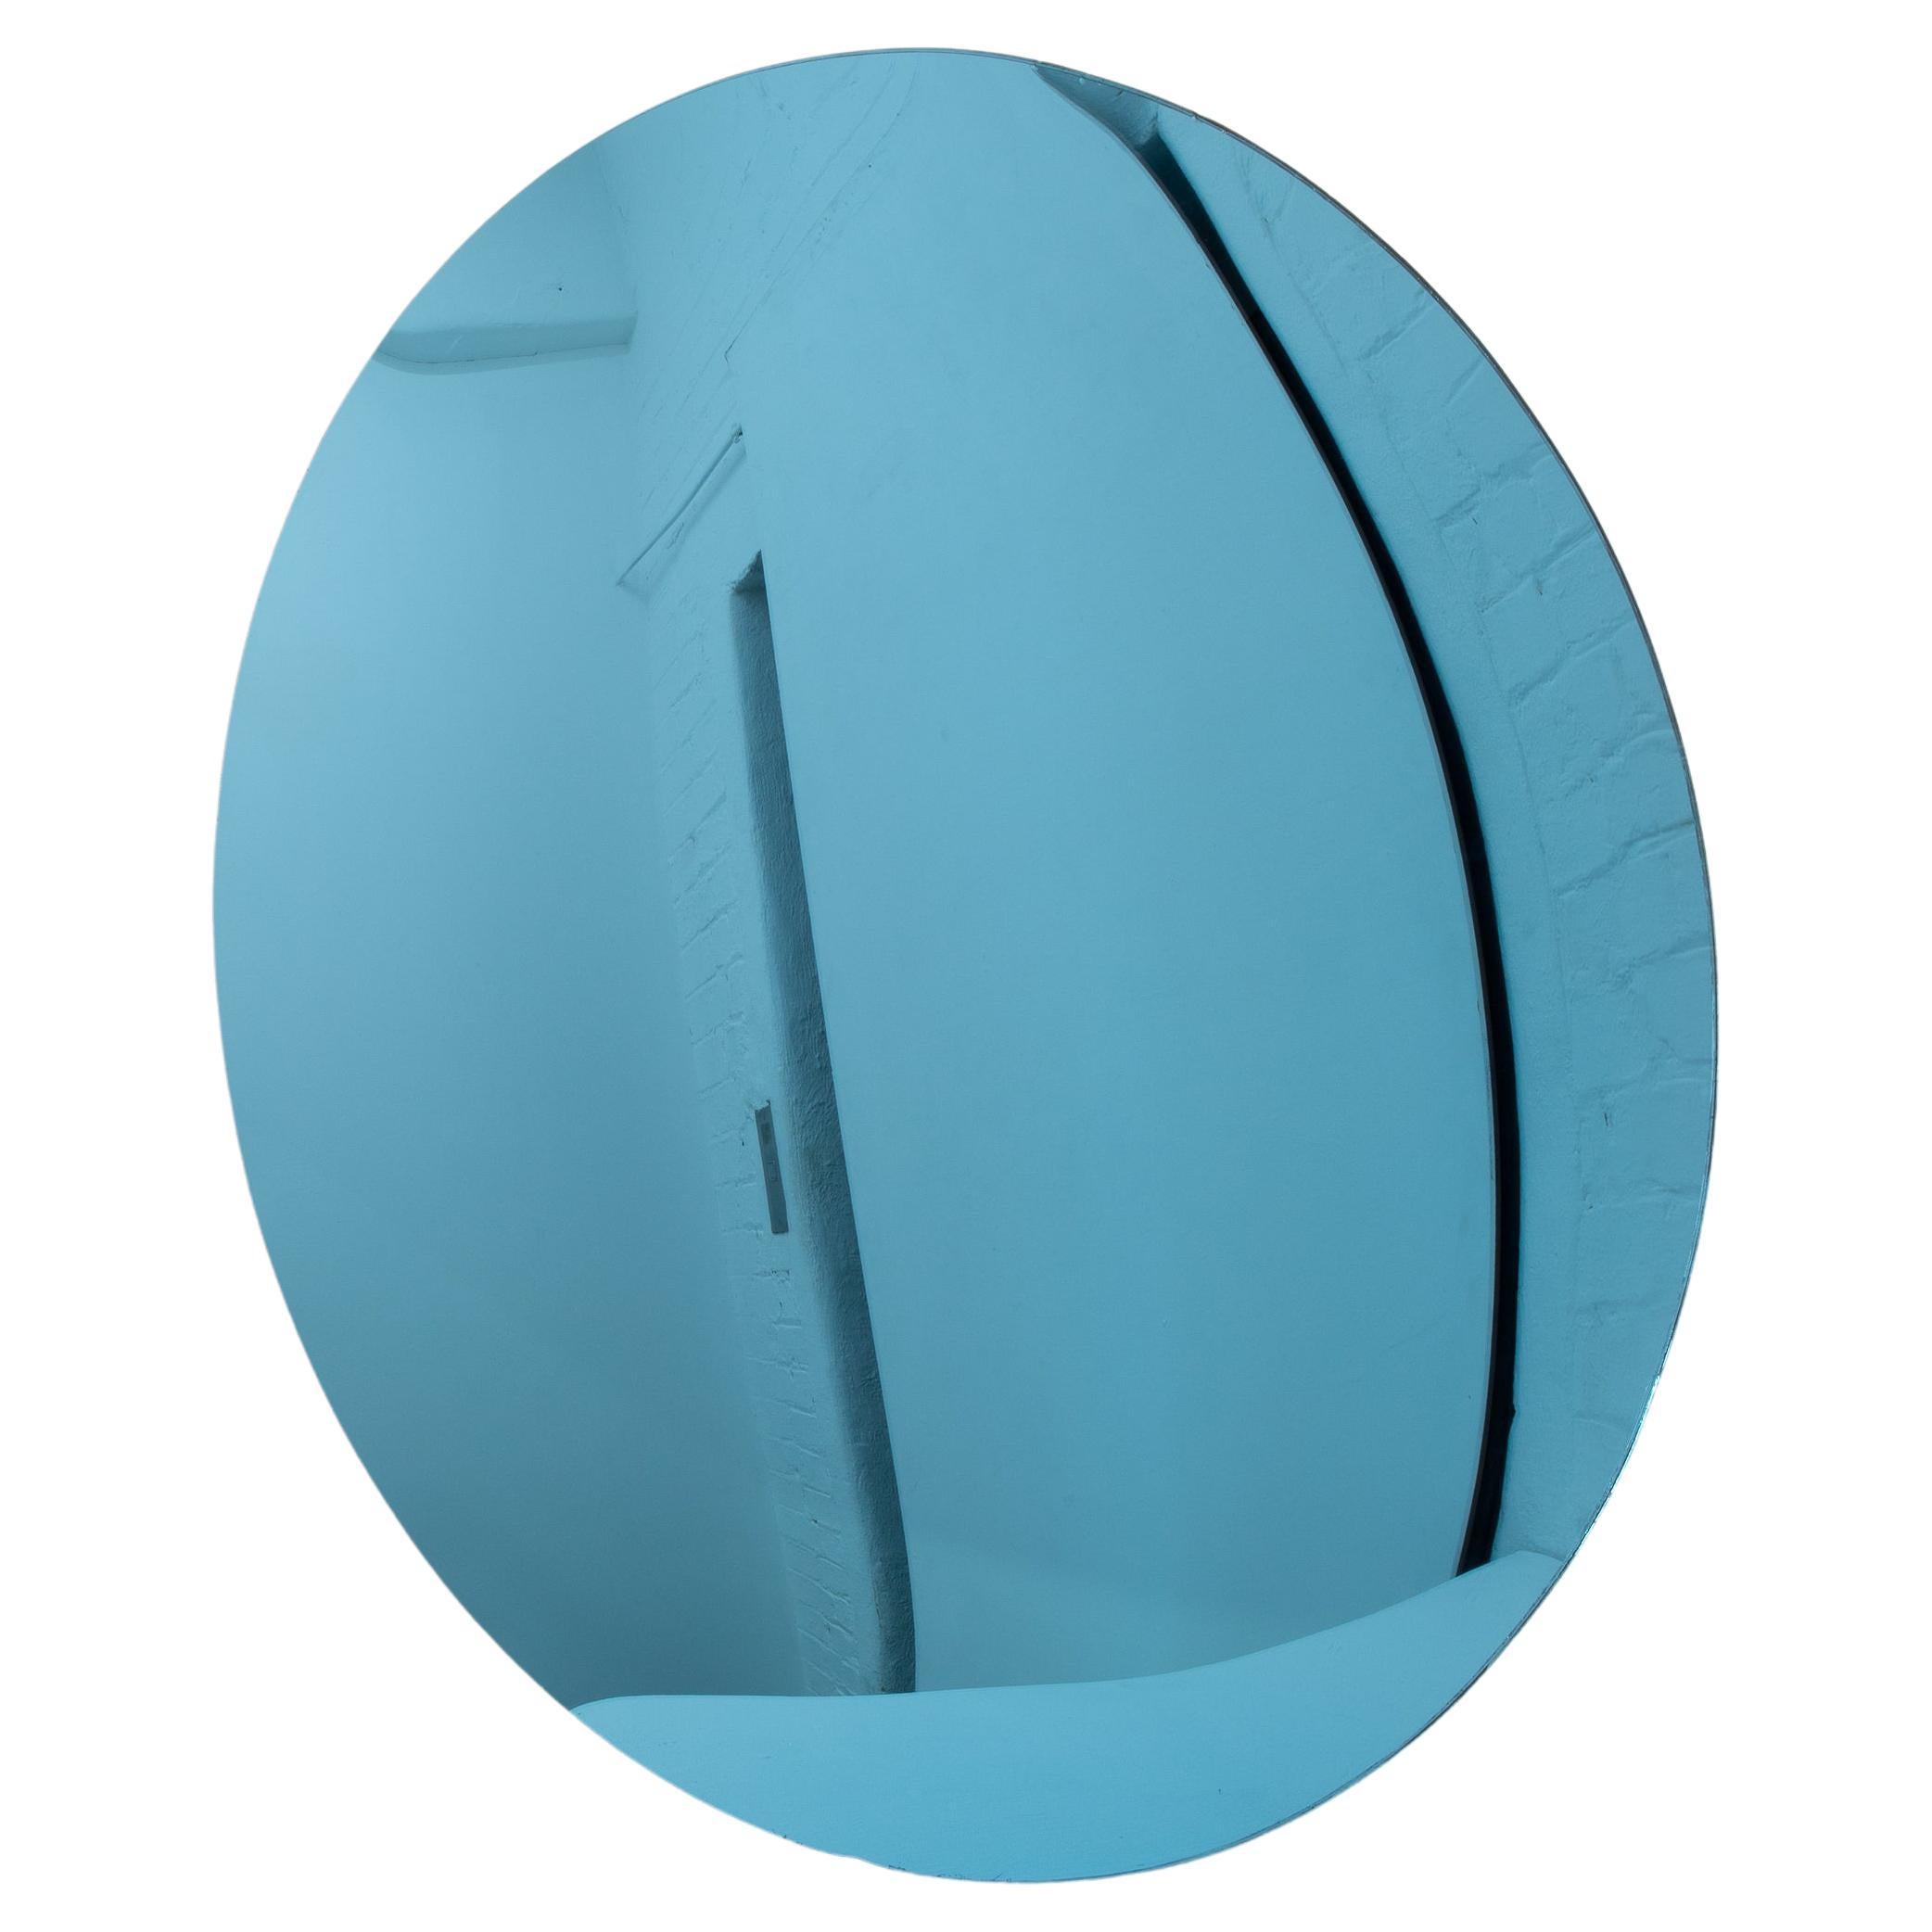 Orbis Convex Blue Handcraft Handcrafted Frameless Contemporary Round Mirror, Large (miroir rond convexe bleu, sans cadre)